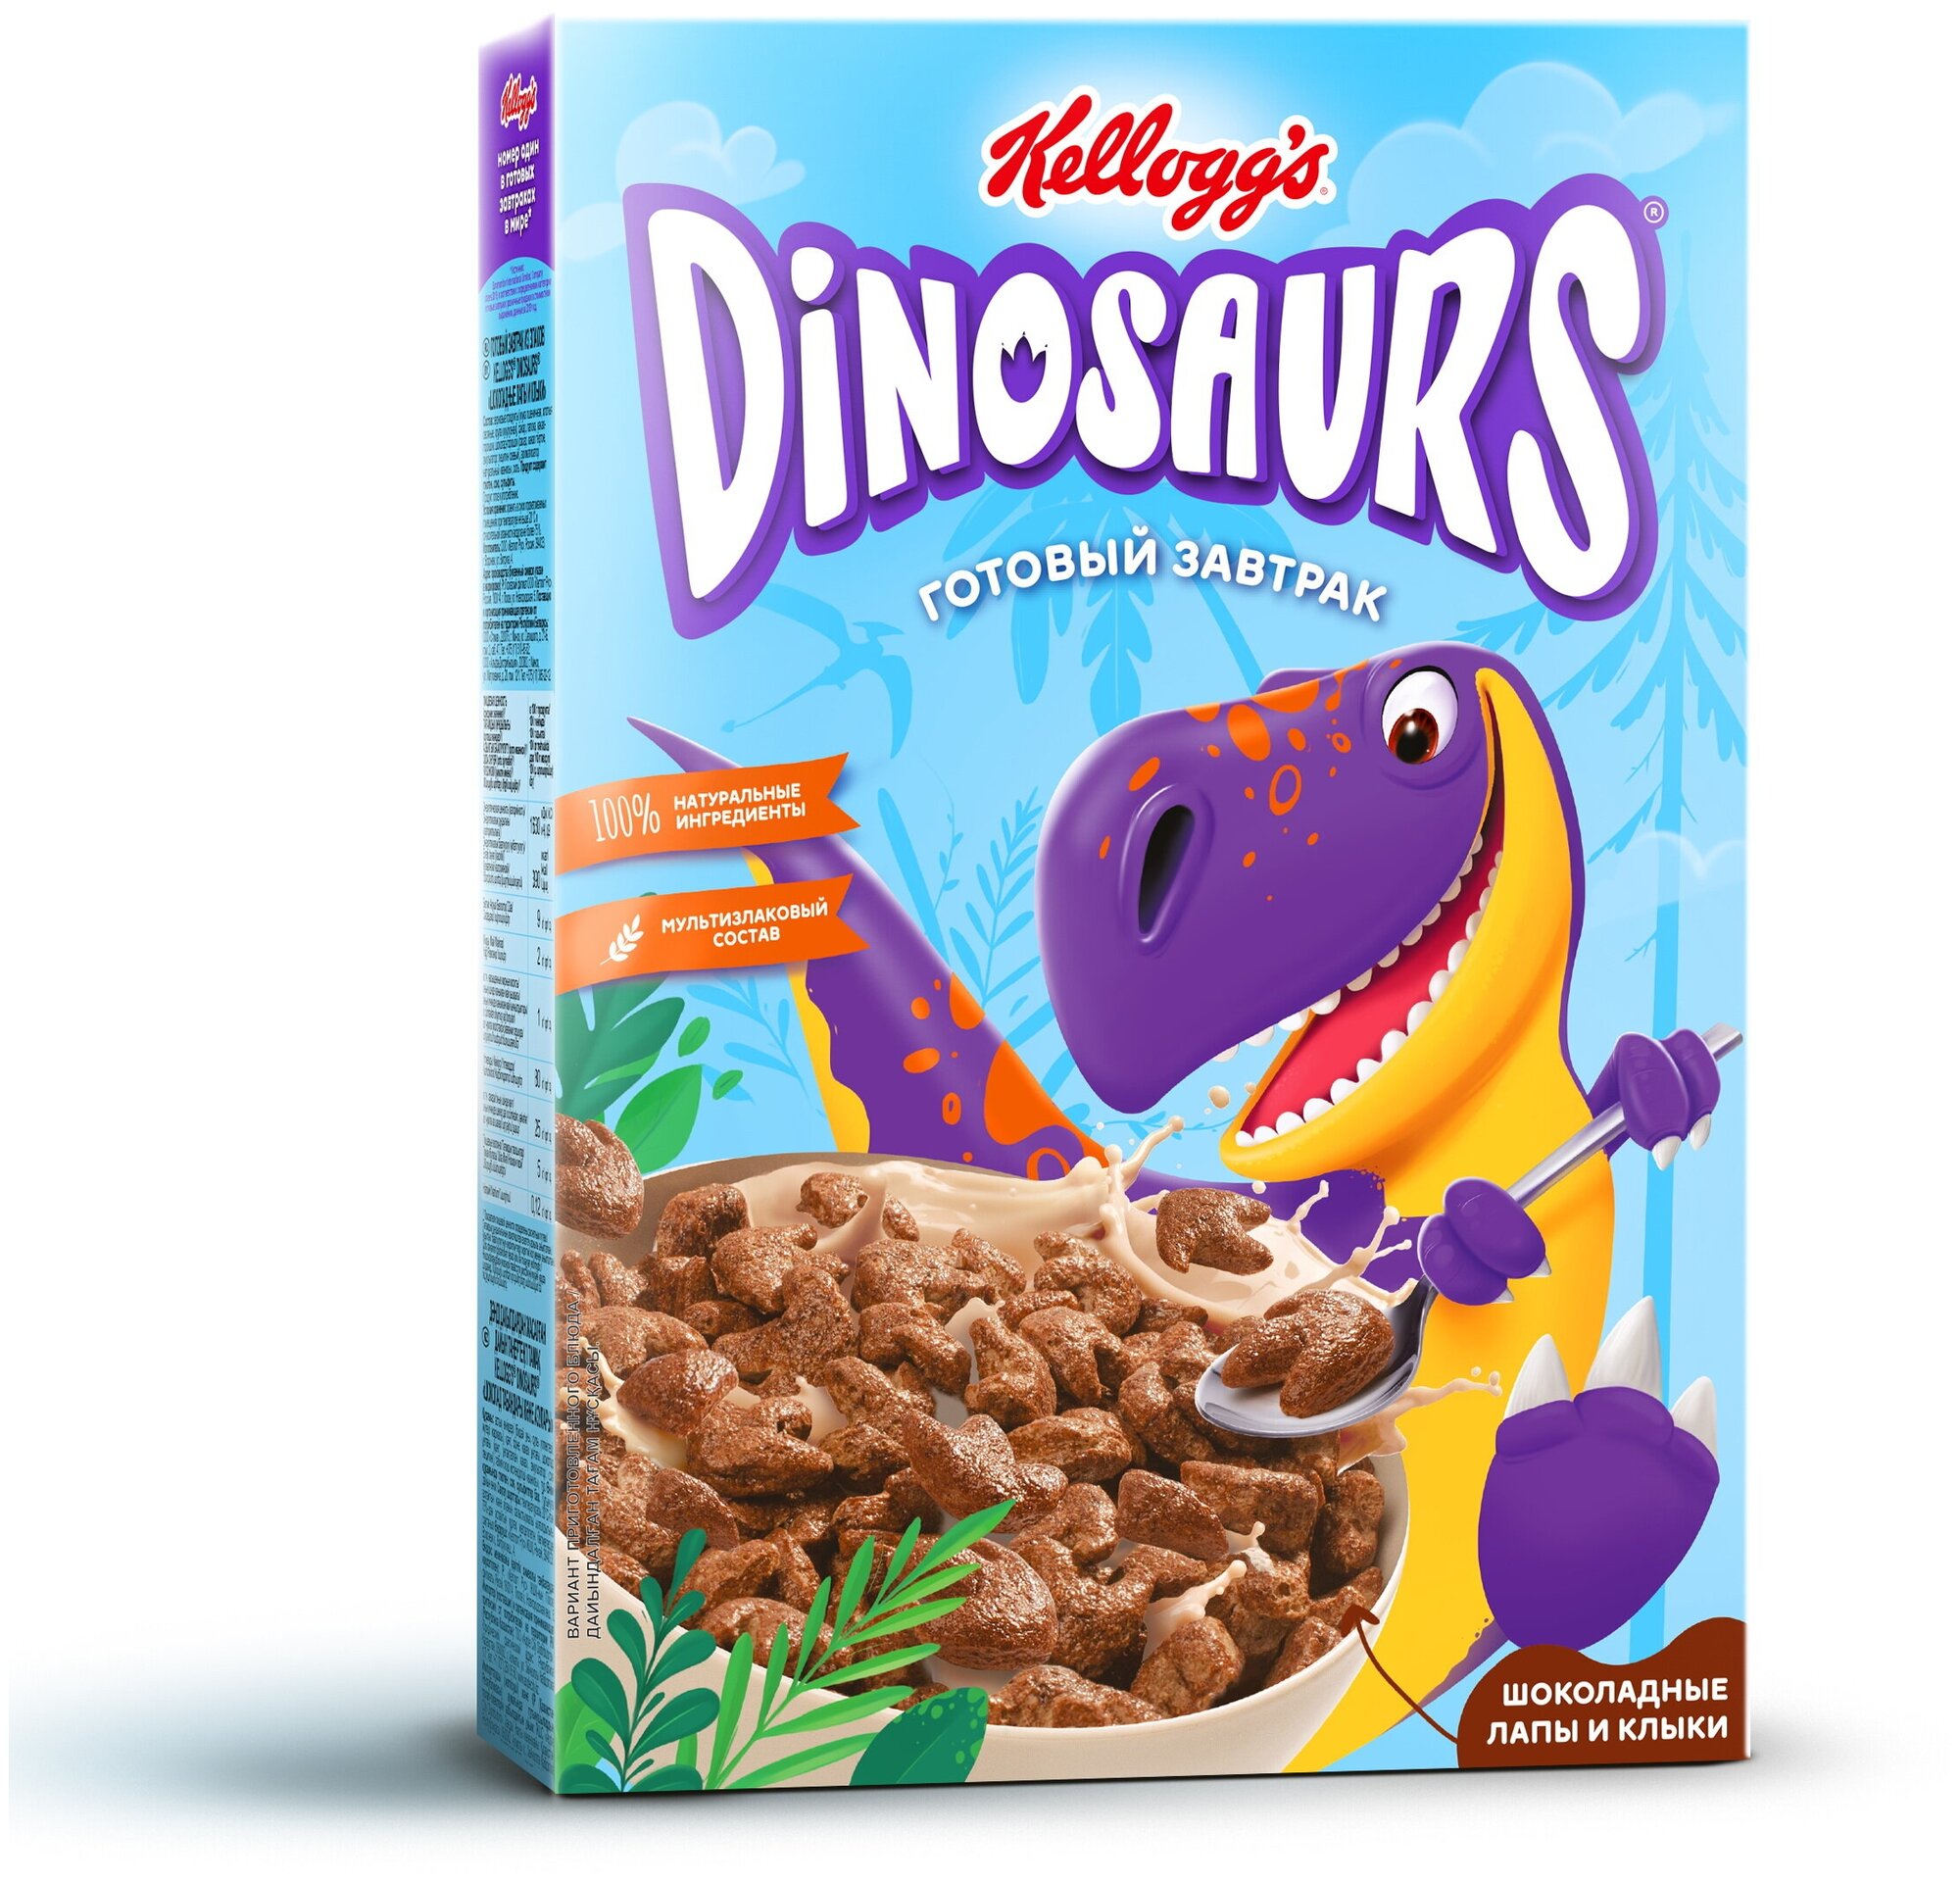 Готовый завтрак из злаков Шоколадные лапы и клыки 1/220 кор (ТМ Kellogg’s; Dinosaurs)